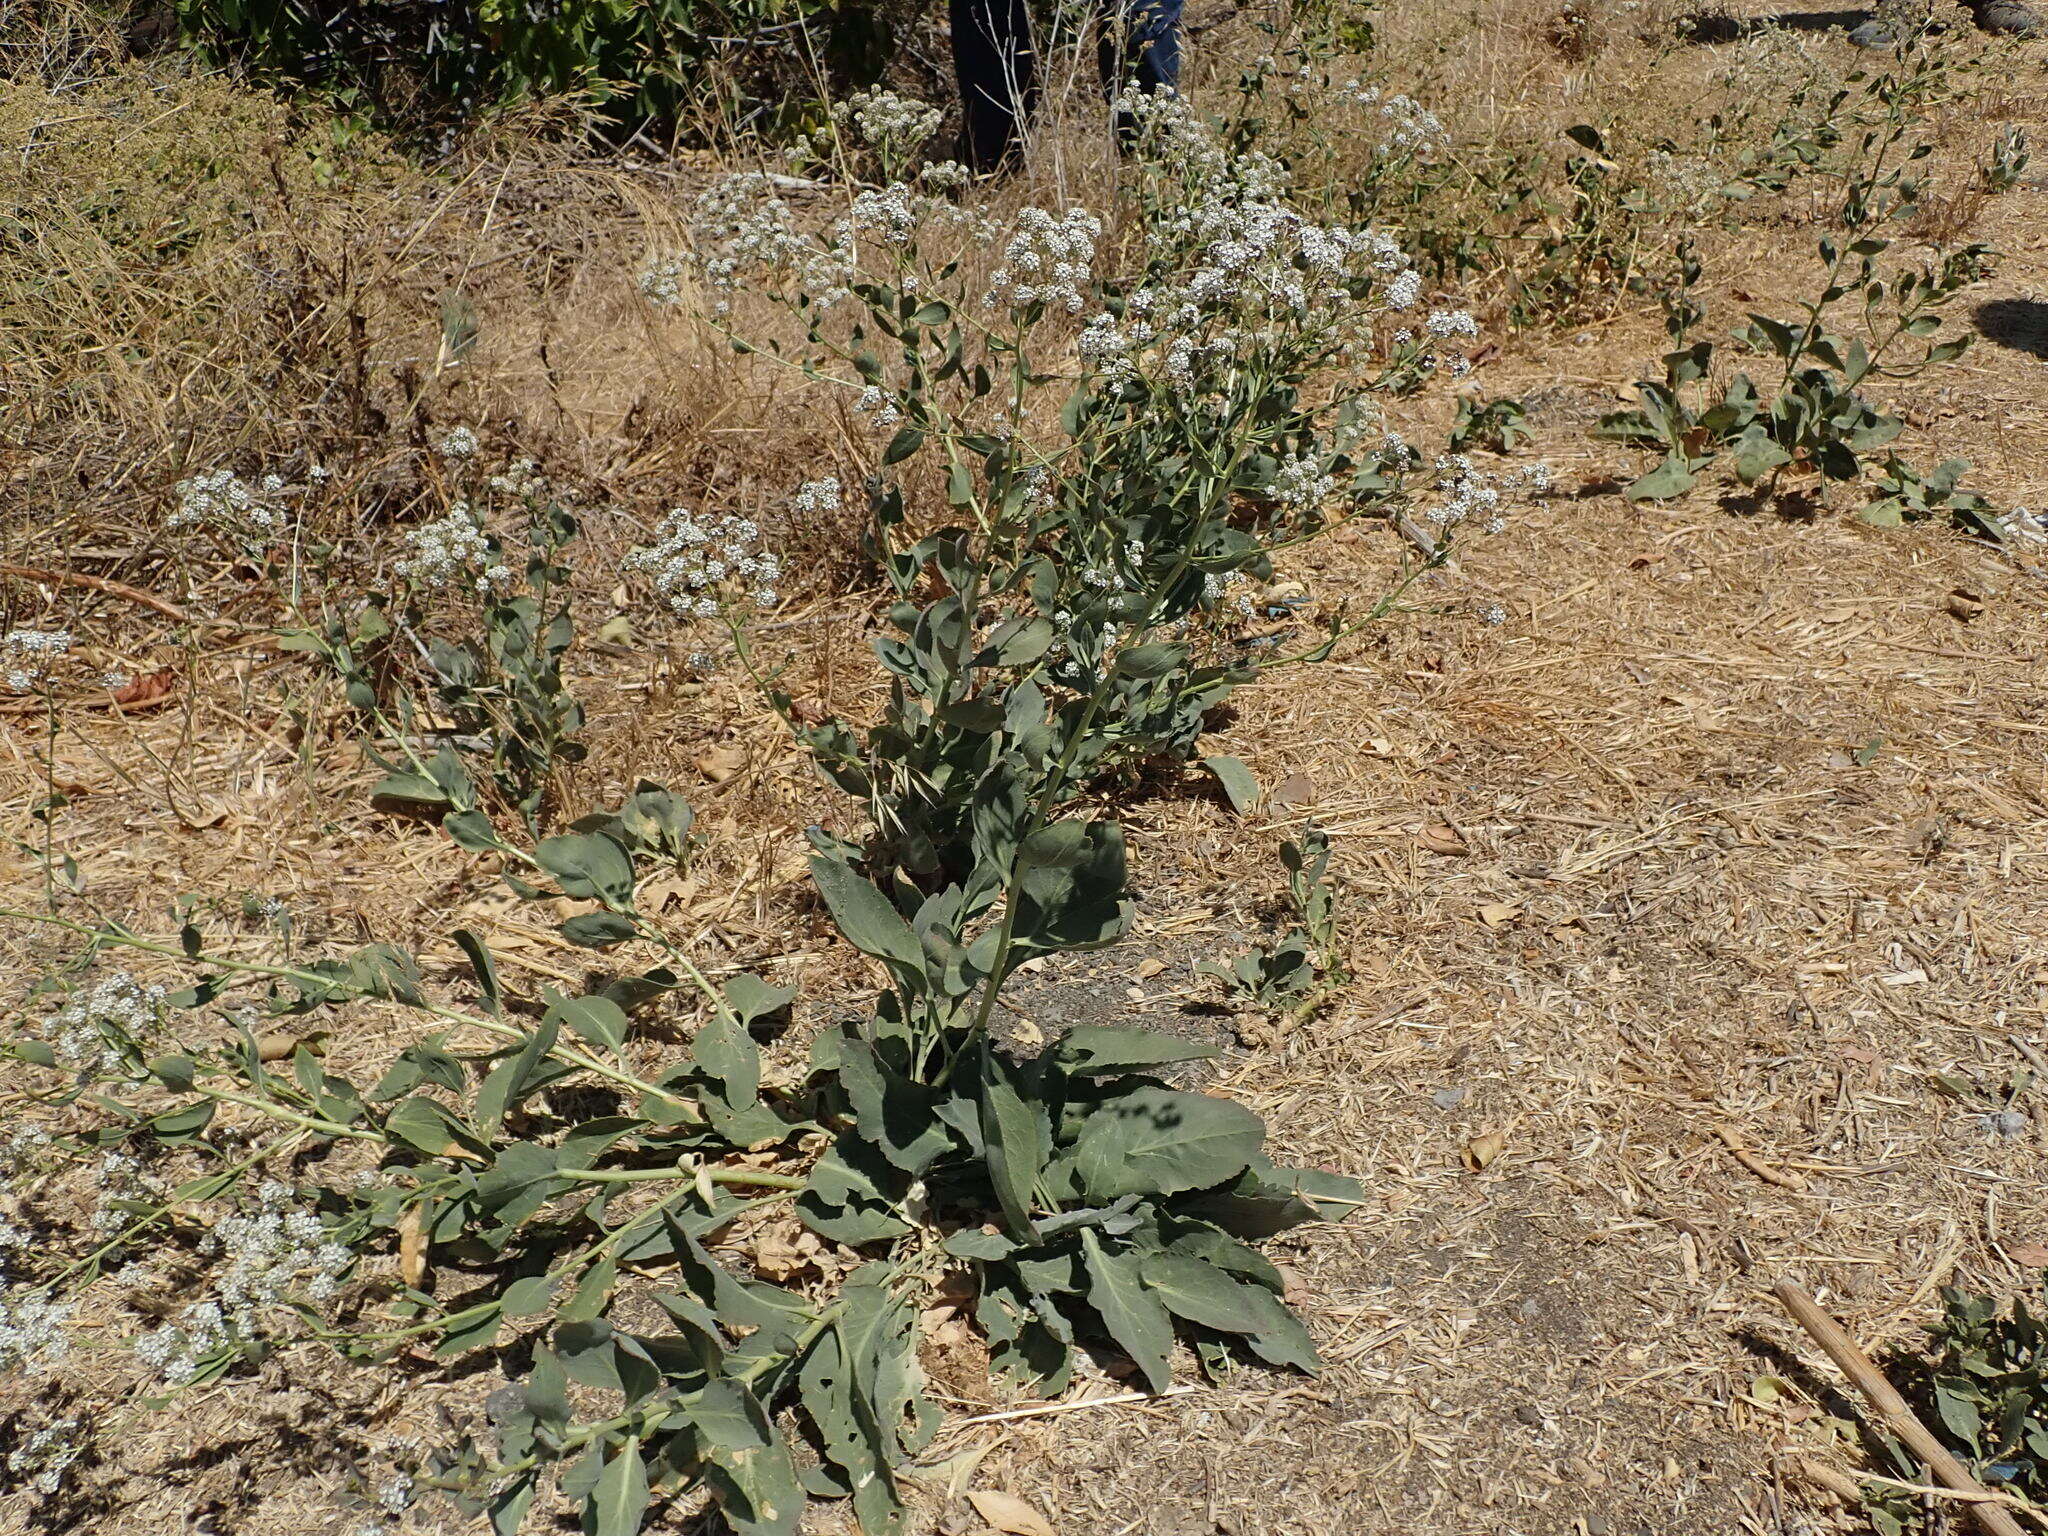 Image of broadleaved pepperweed